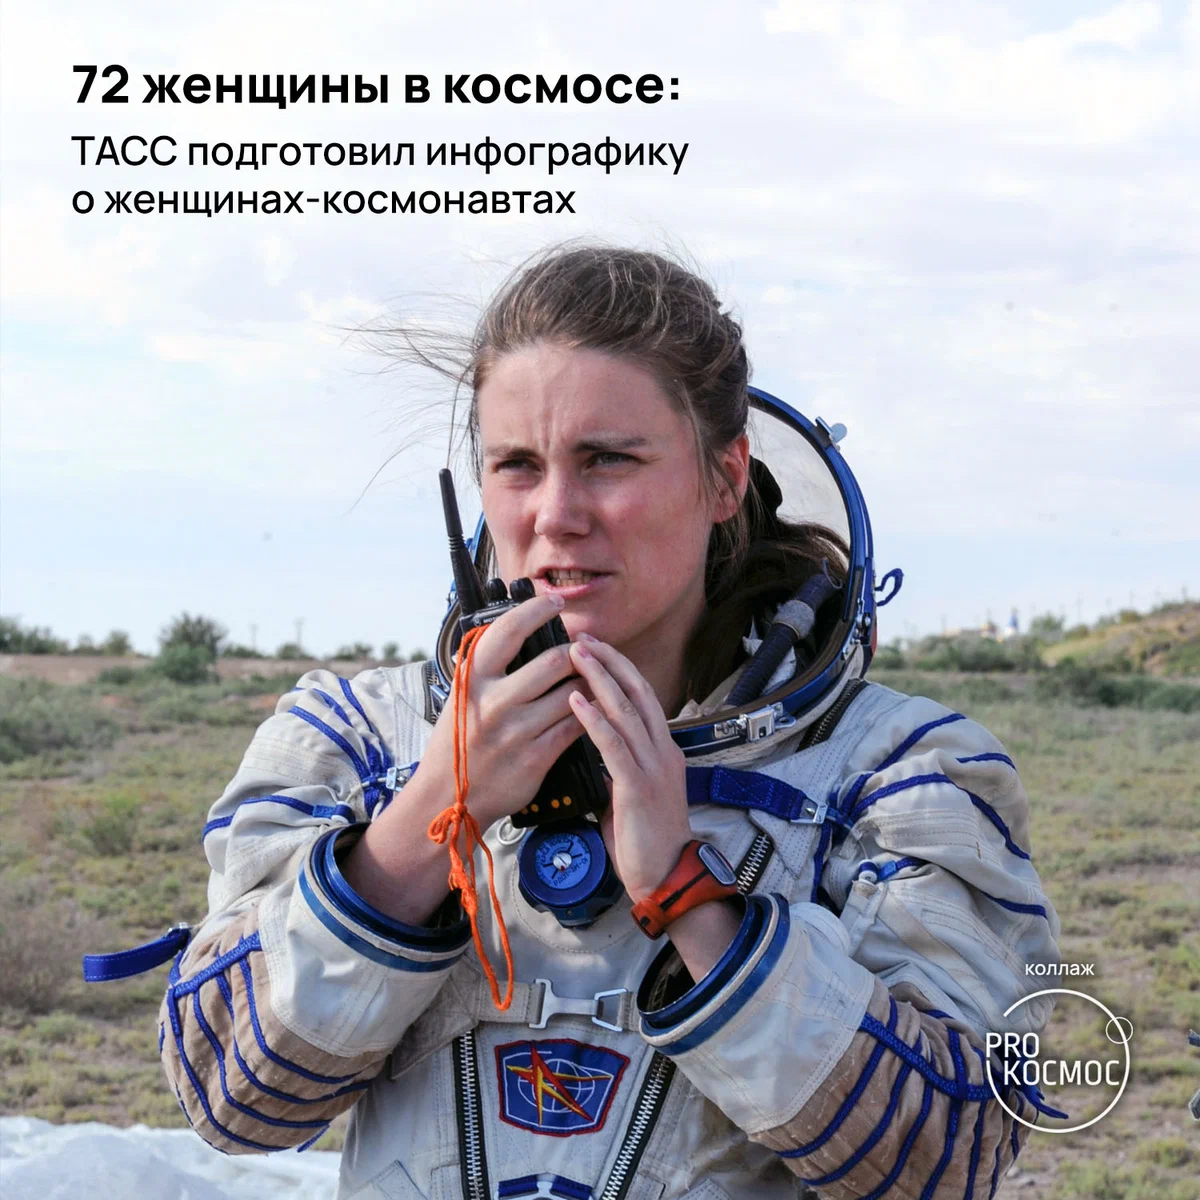 72 женщины в космосе: ТАСС подготовил инфографику о женщинах-космонавтах height=1200px width=1200px